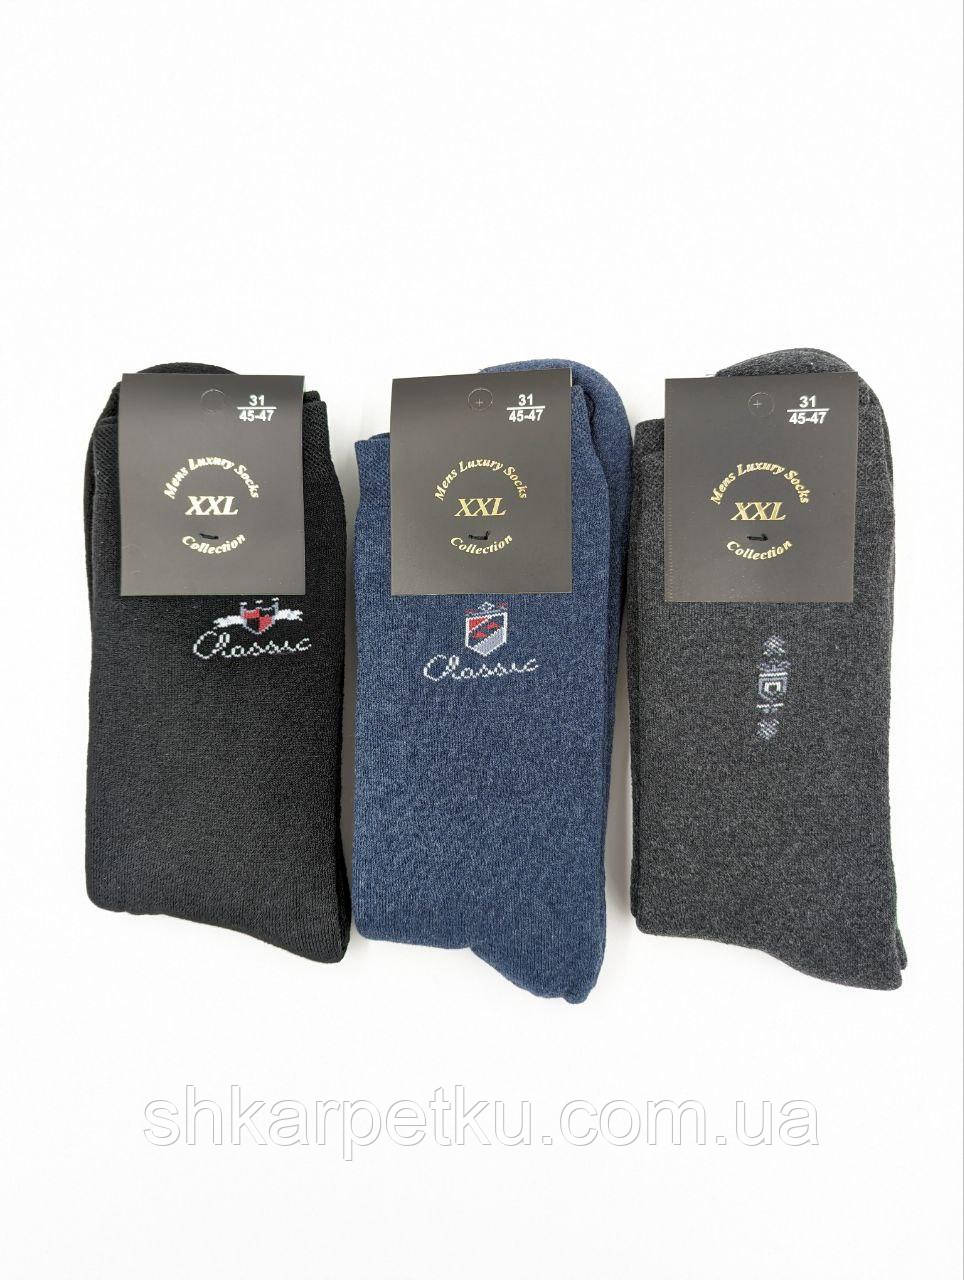 Чоловічі шкарпетки XXL махрові однотонні з написом розміри 41-43 12 пар/пач. мікс кольорів